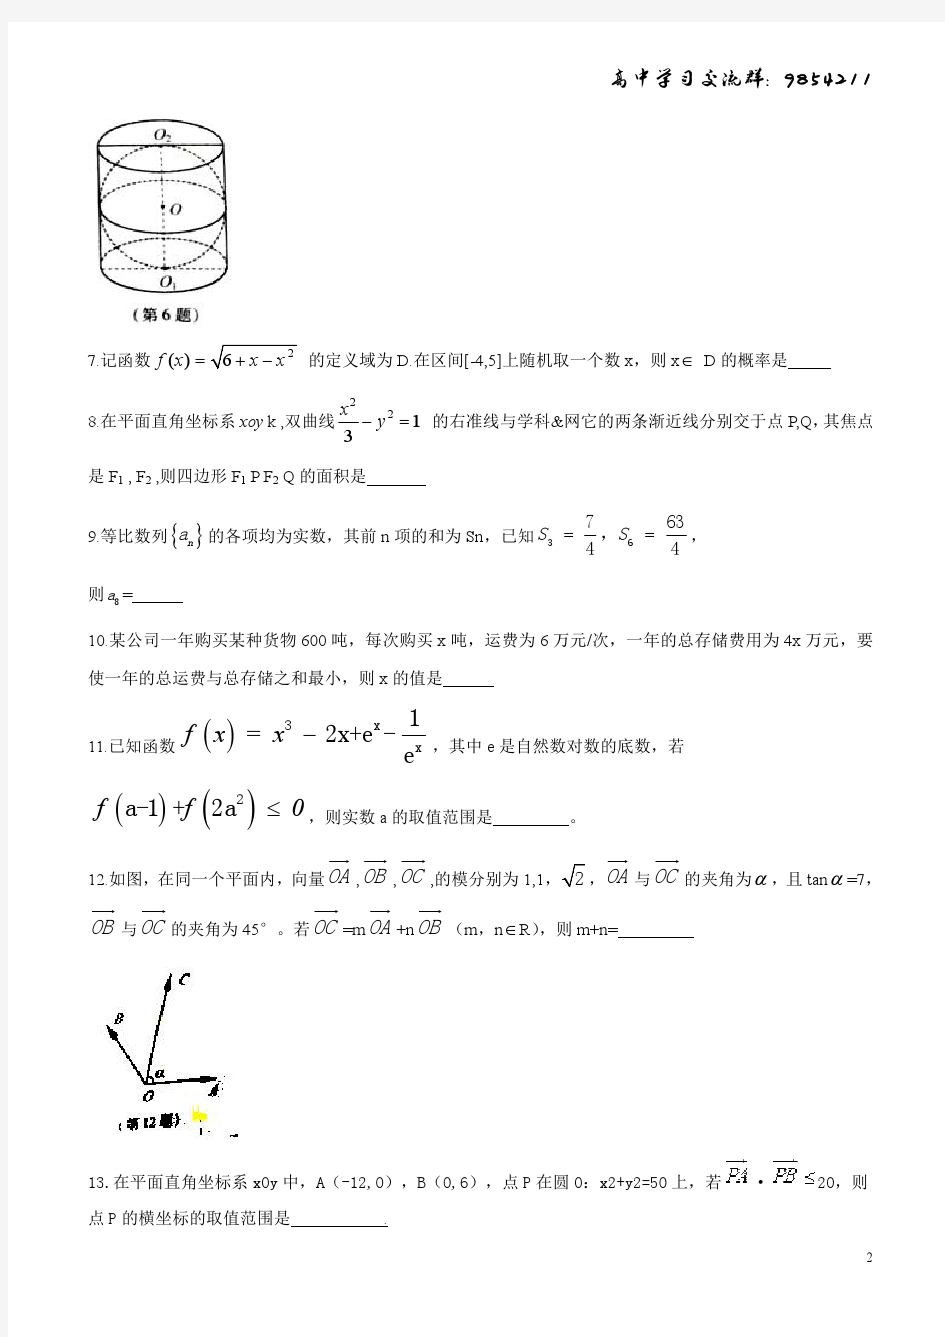 2017年江苏高考数学(带附加题)